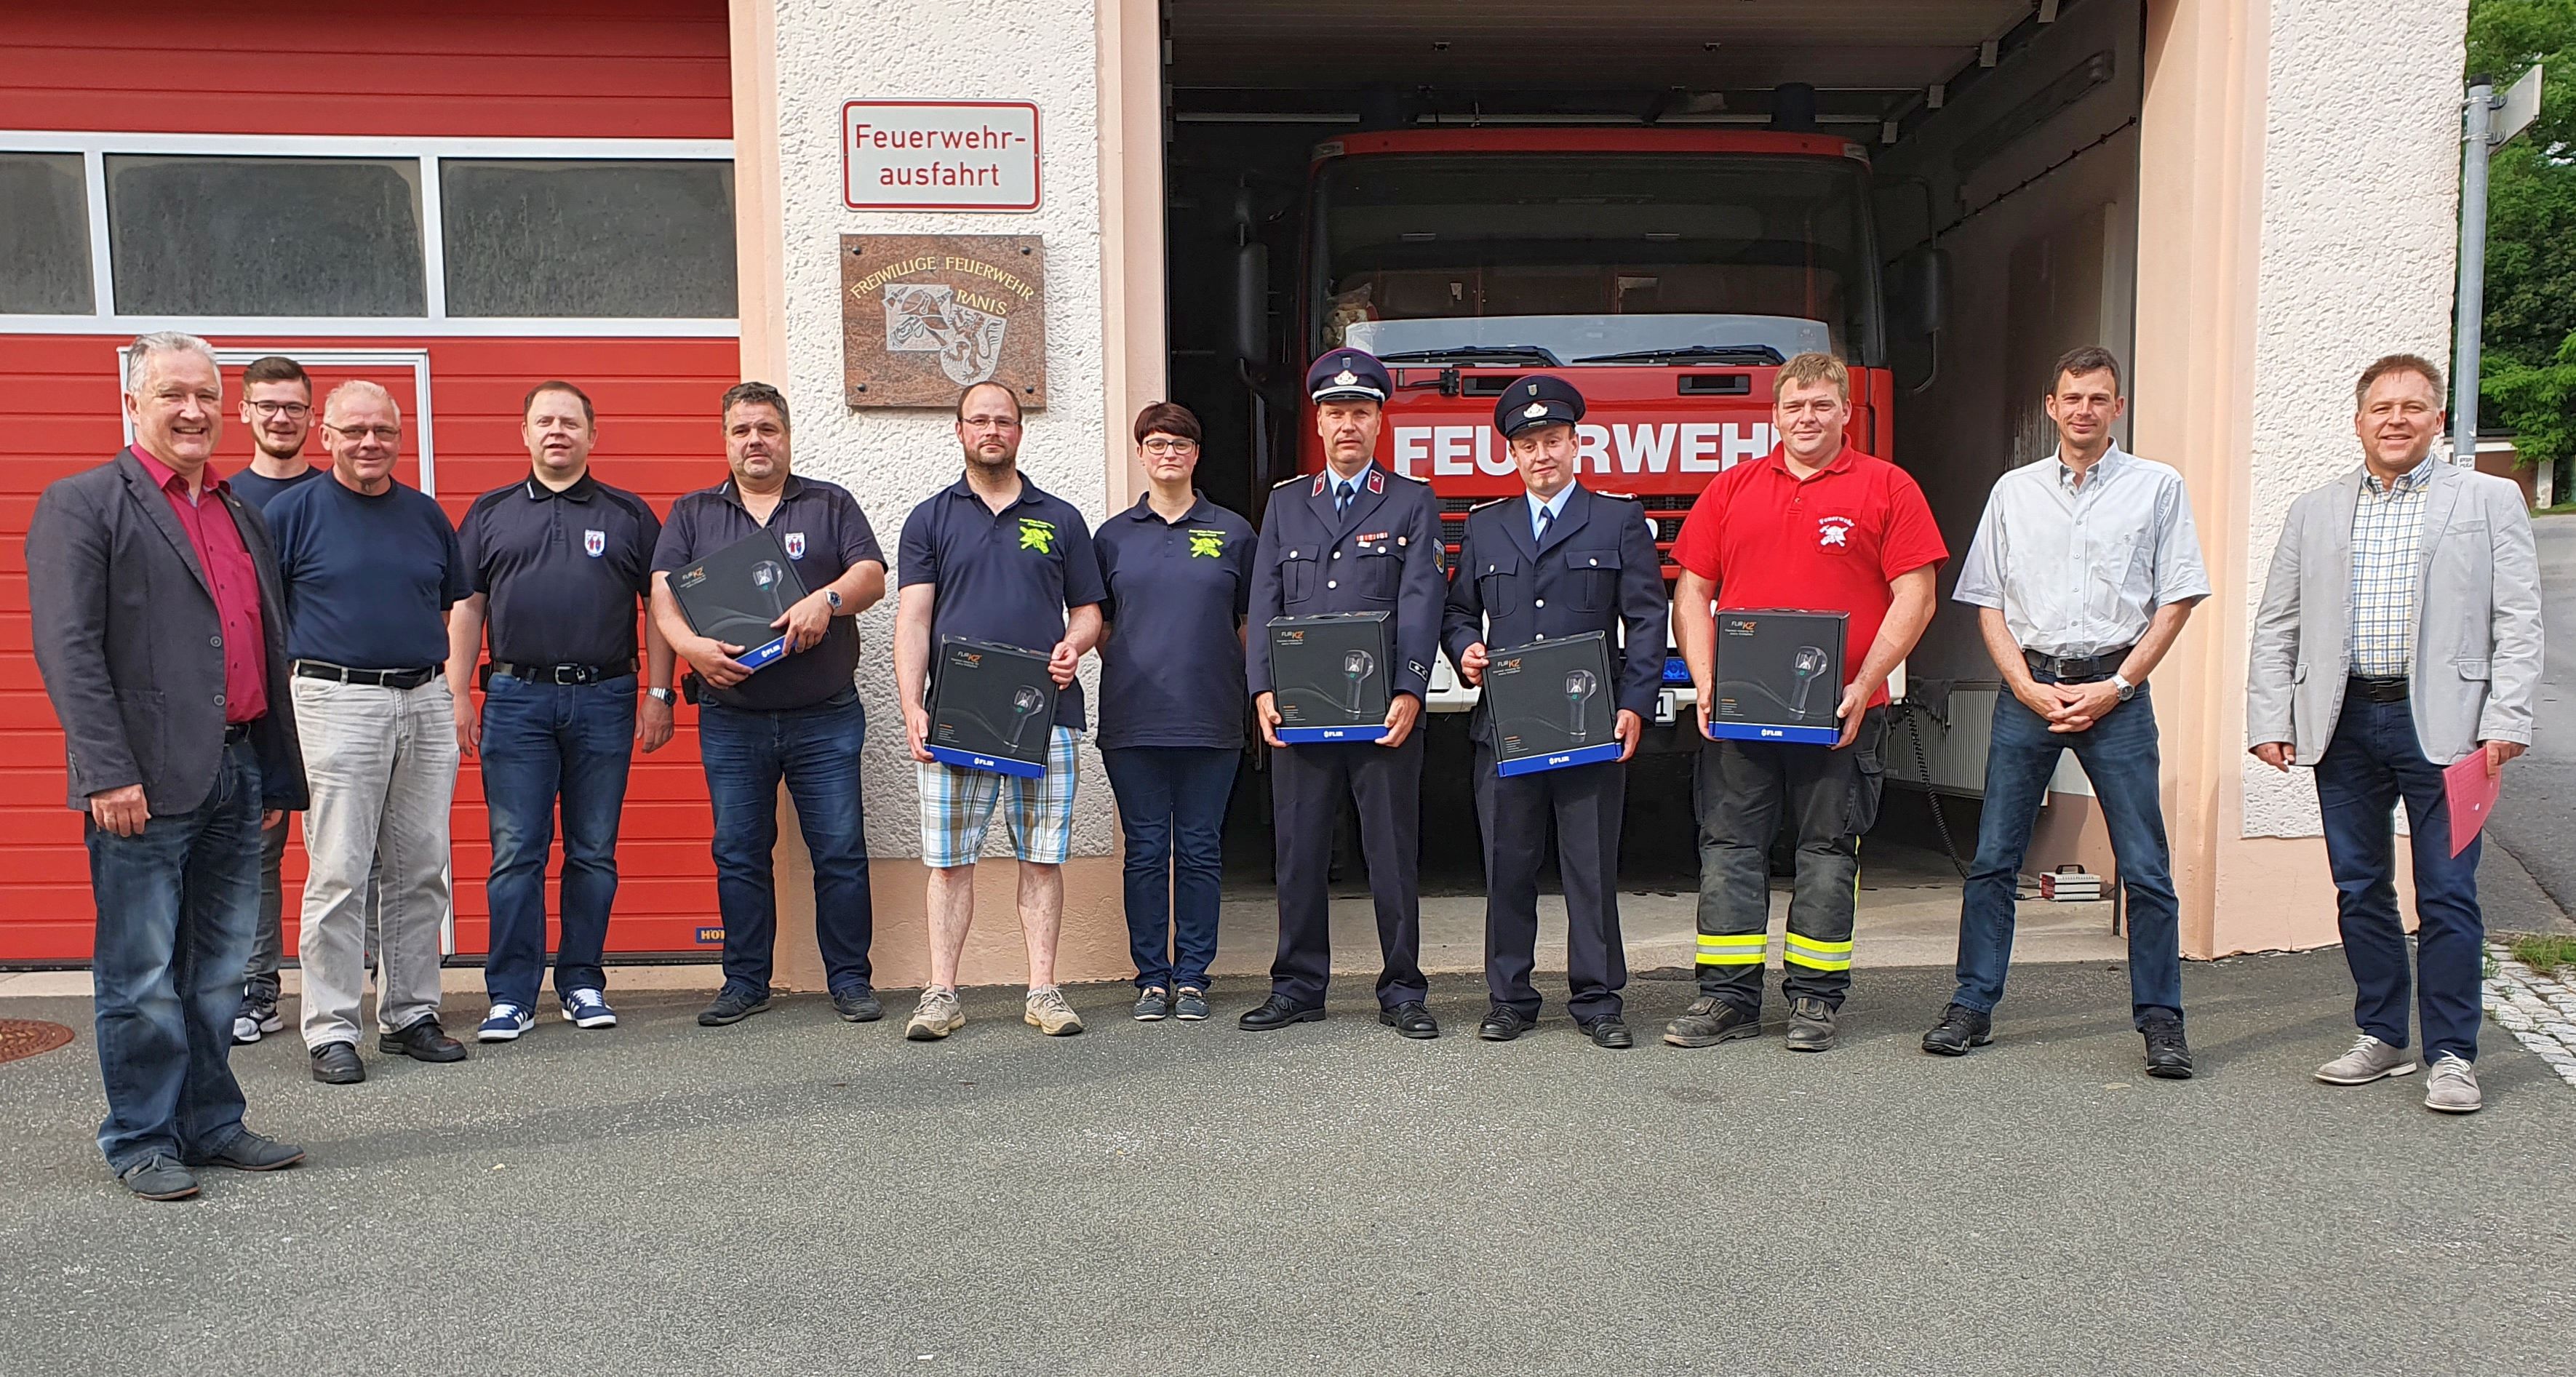 Übergabe der Wärmebildkameras für 5 Feuerwehren der VG Ranis-Ziegenrück